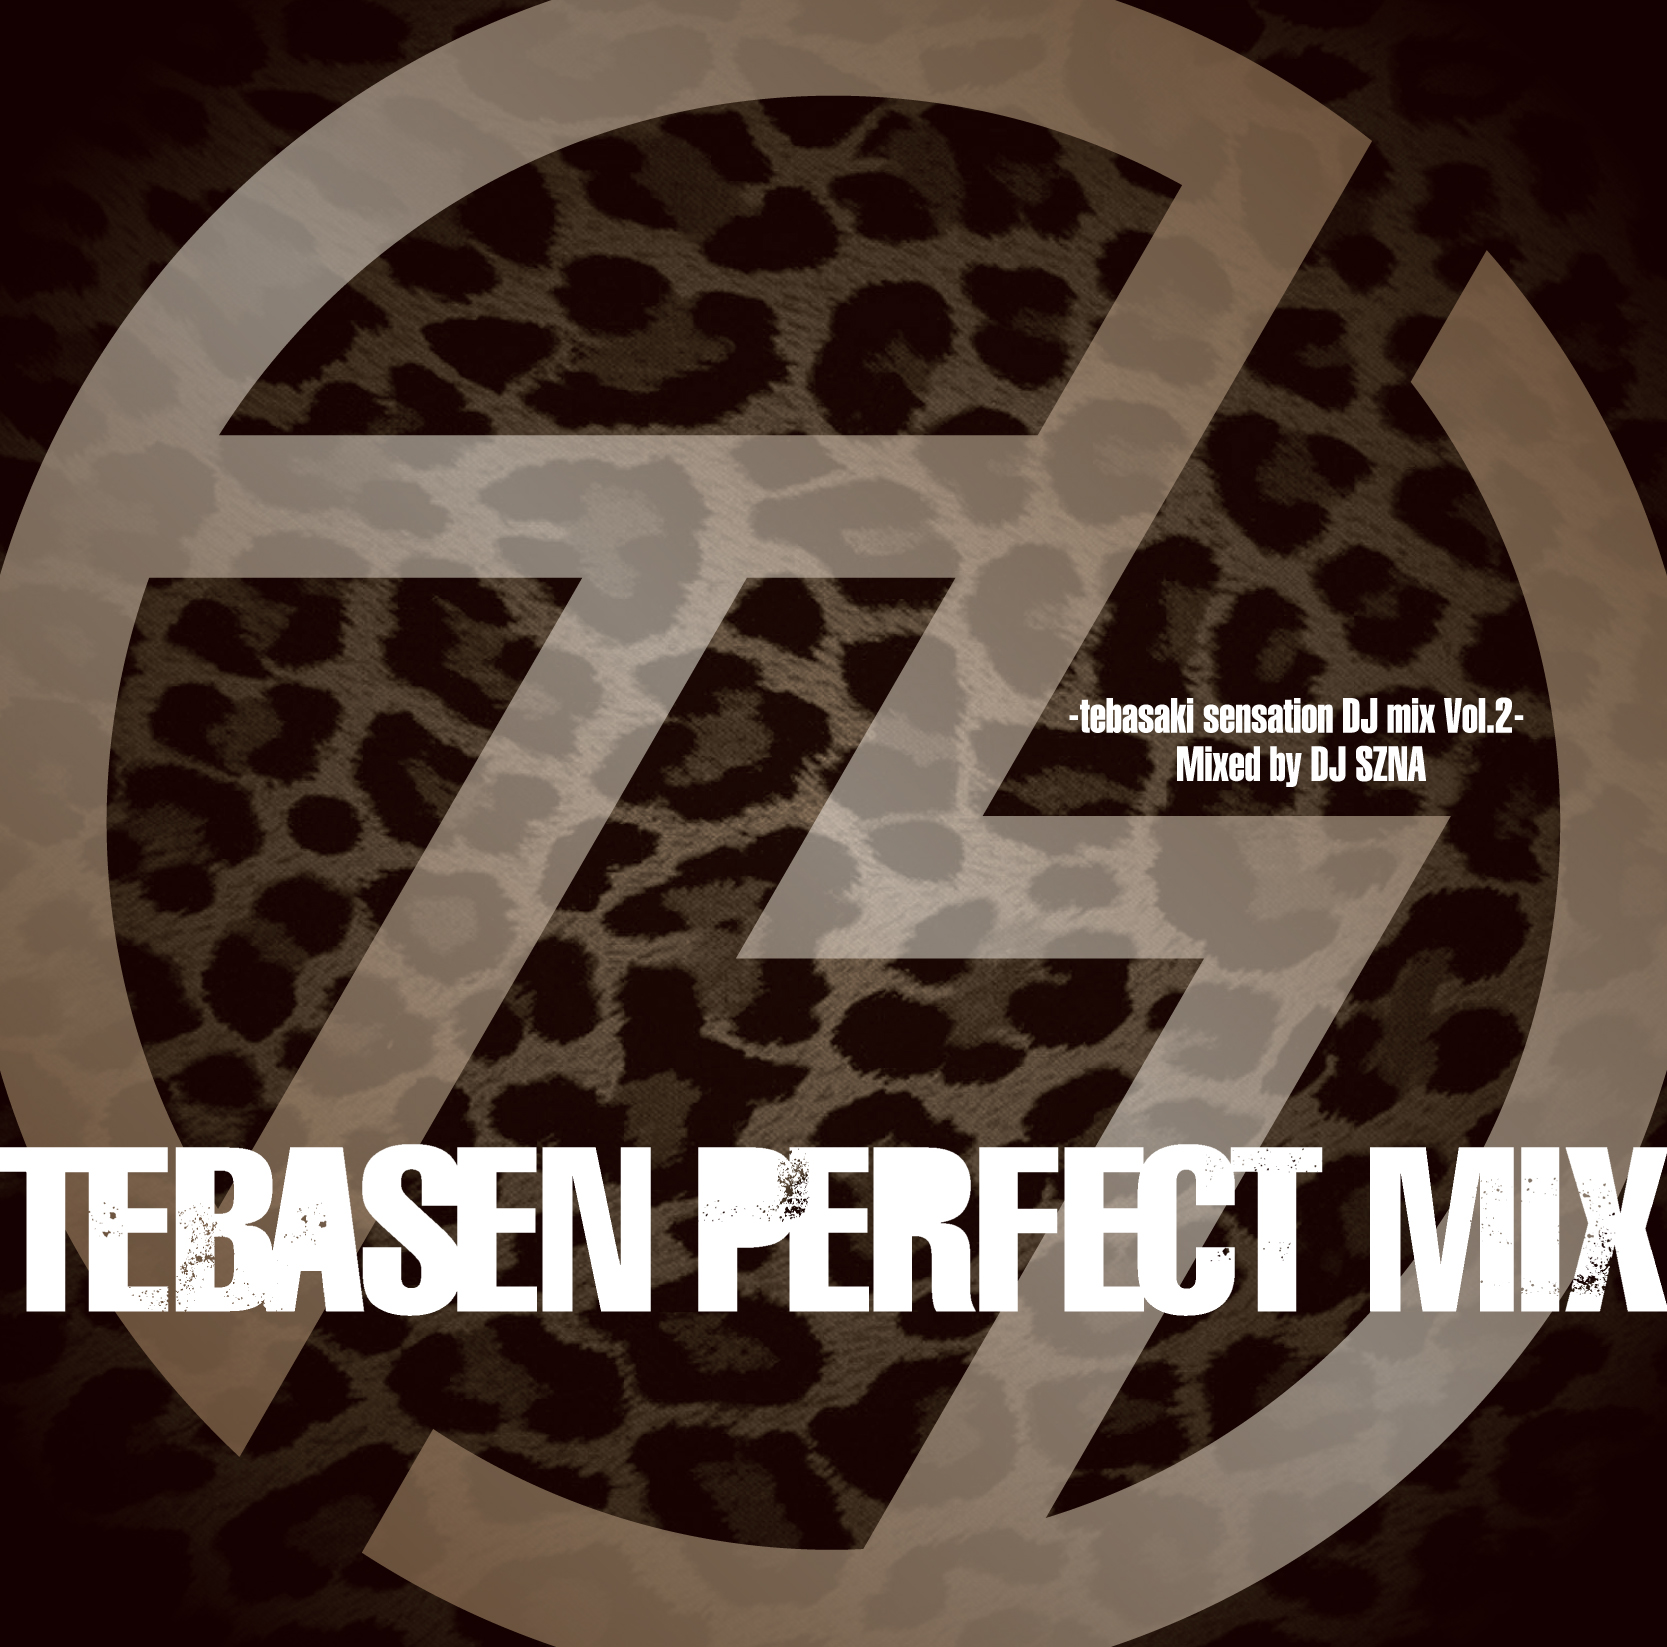 TEBASEN PERFECT MIX -tebasaki sensation DJ mix Vol.2- Mixed by DJ SZNA